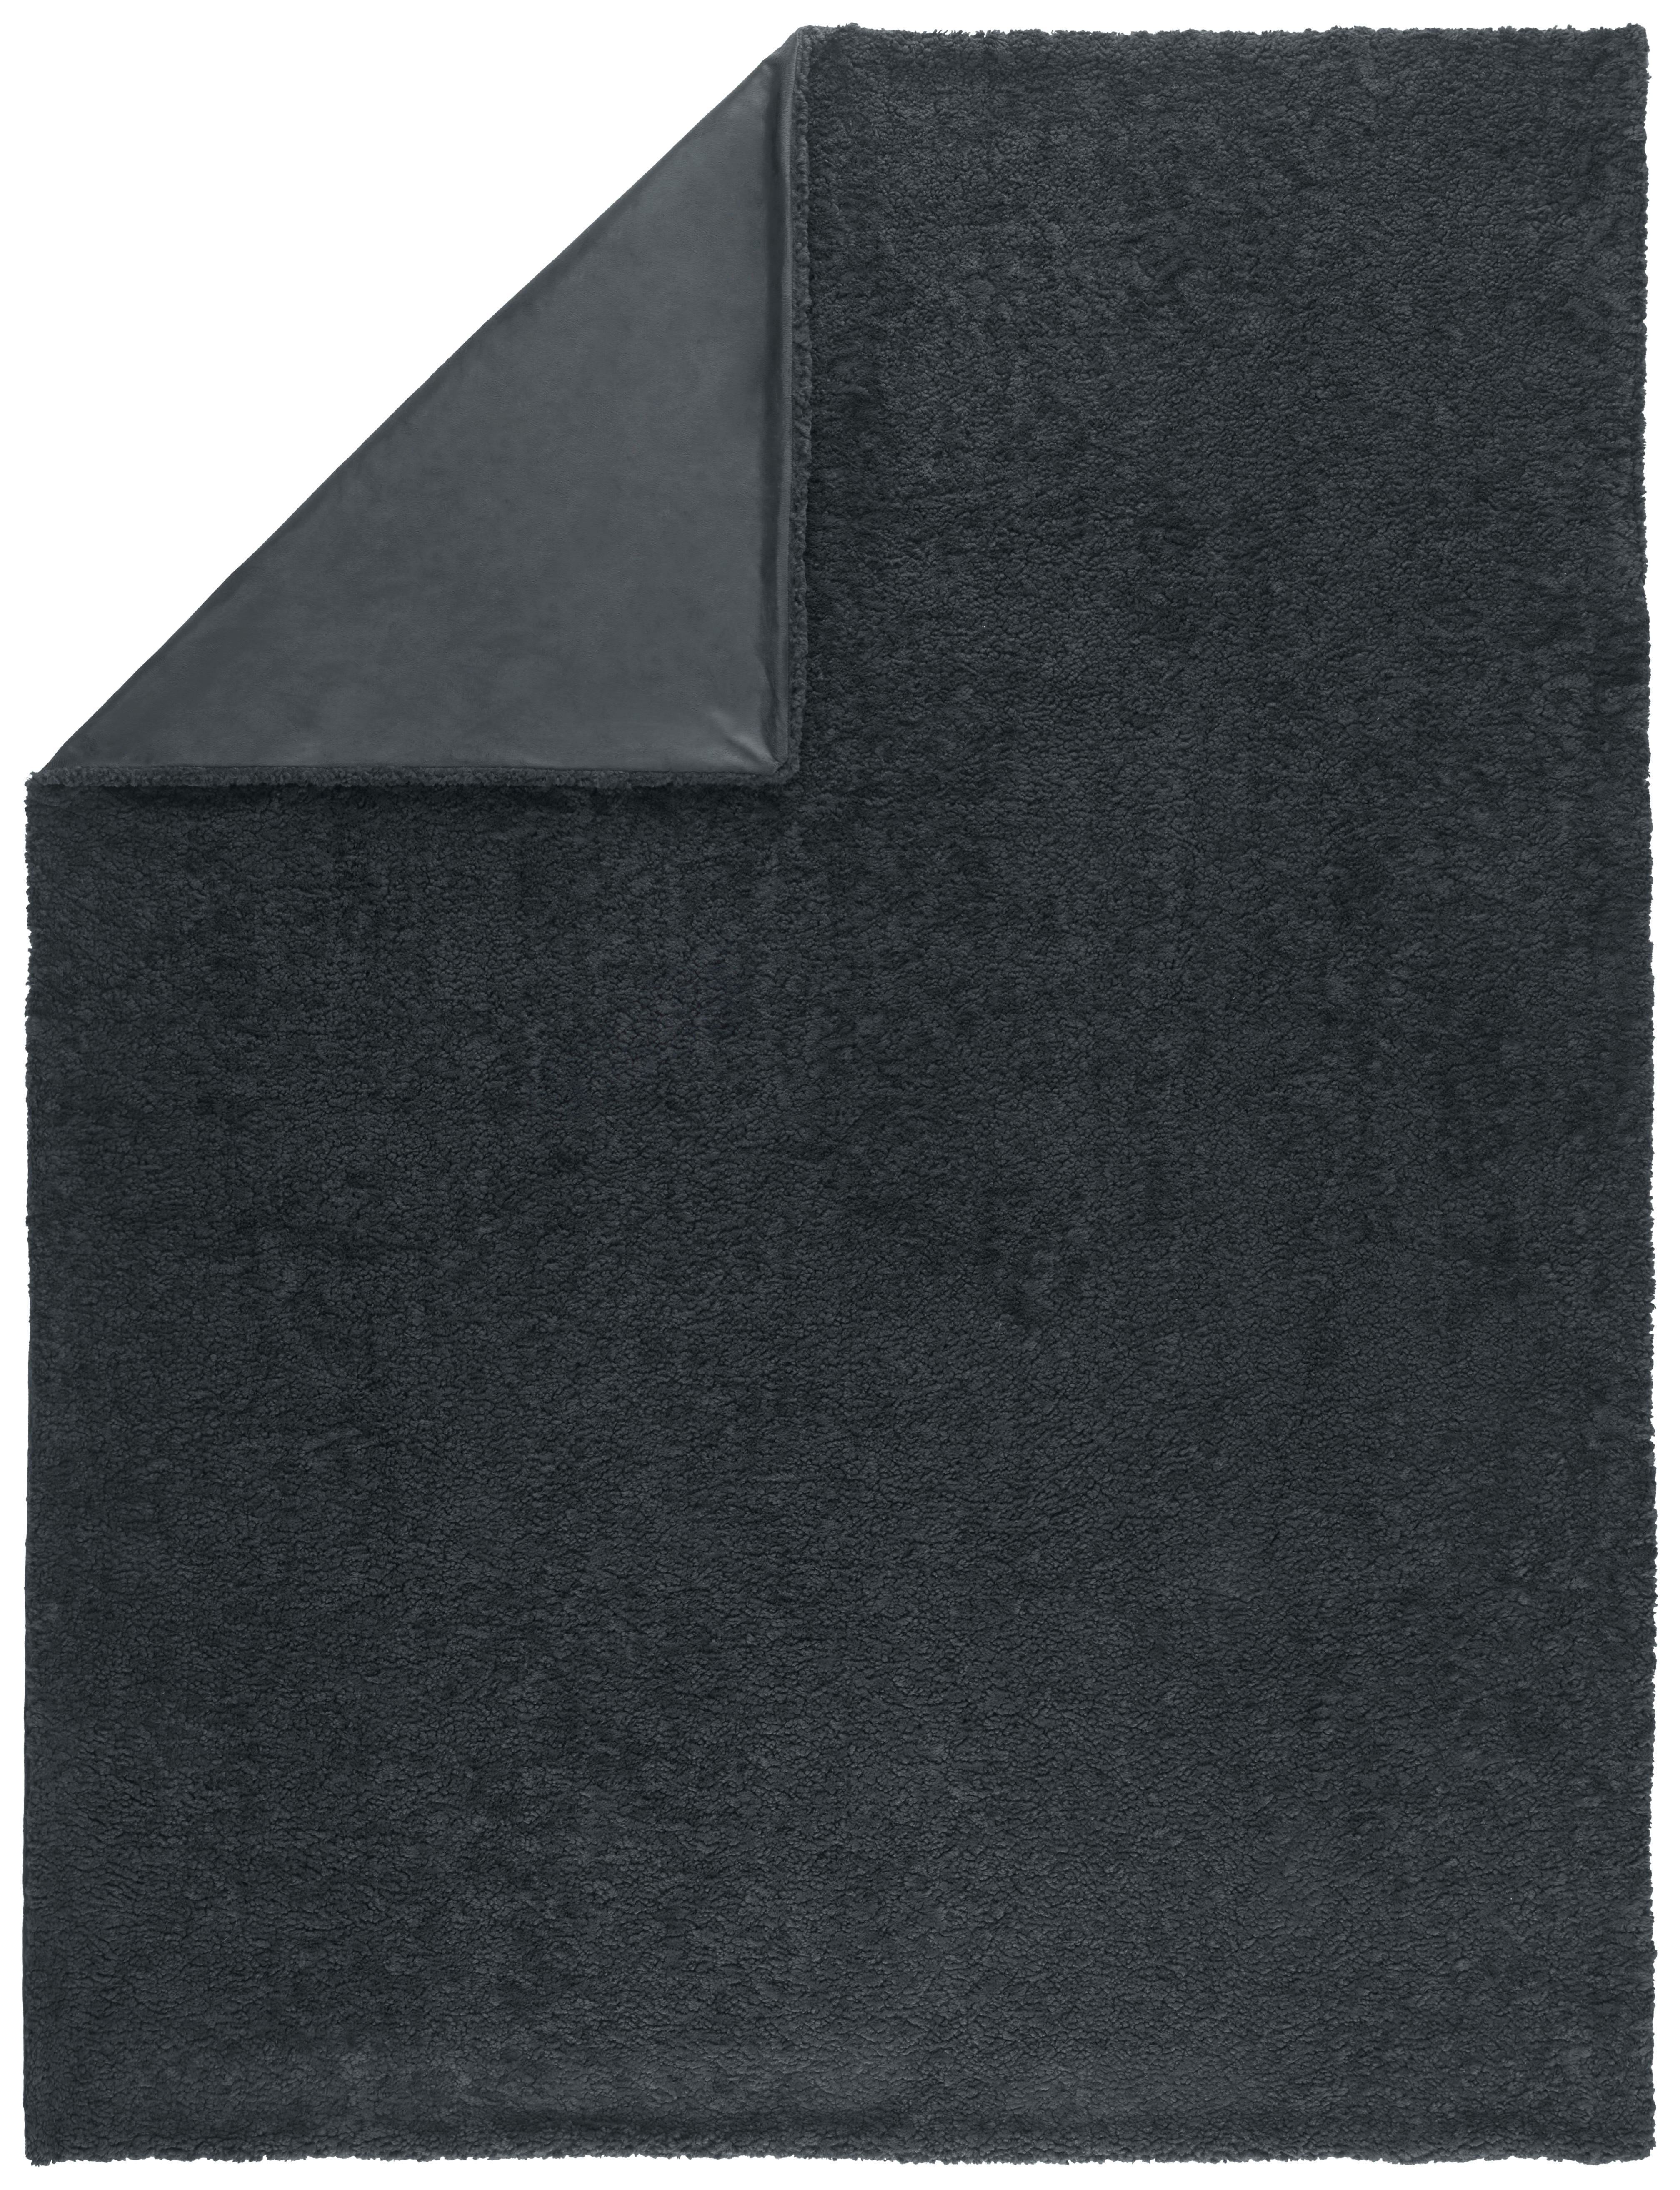 FILT 150/200 cm  - antracit, Klassisk, textil (150/200cm) - Novel